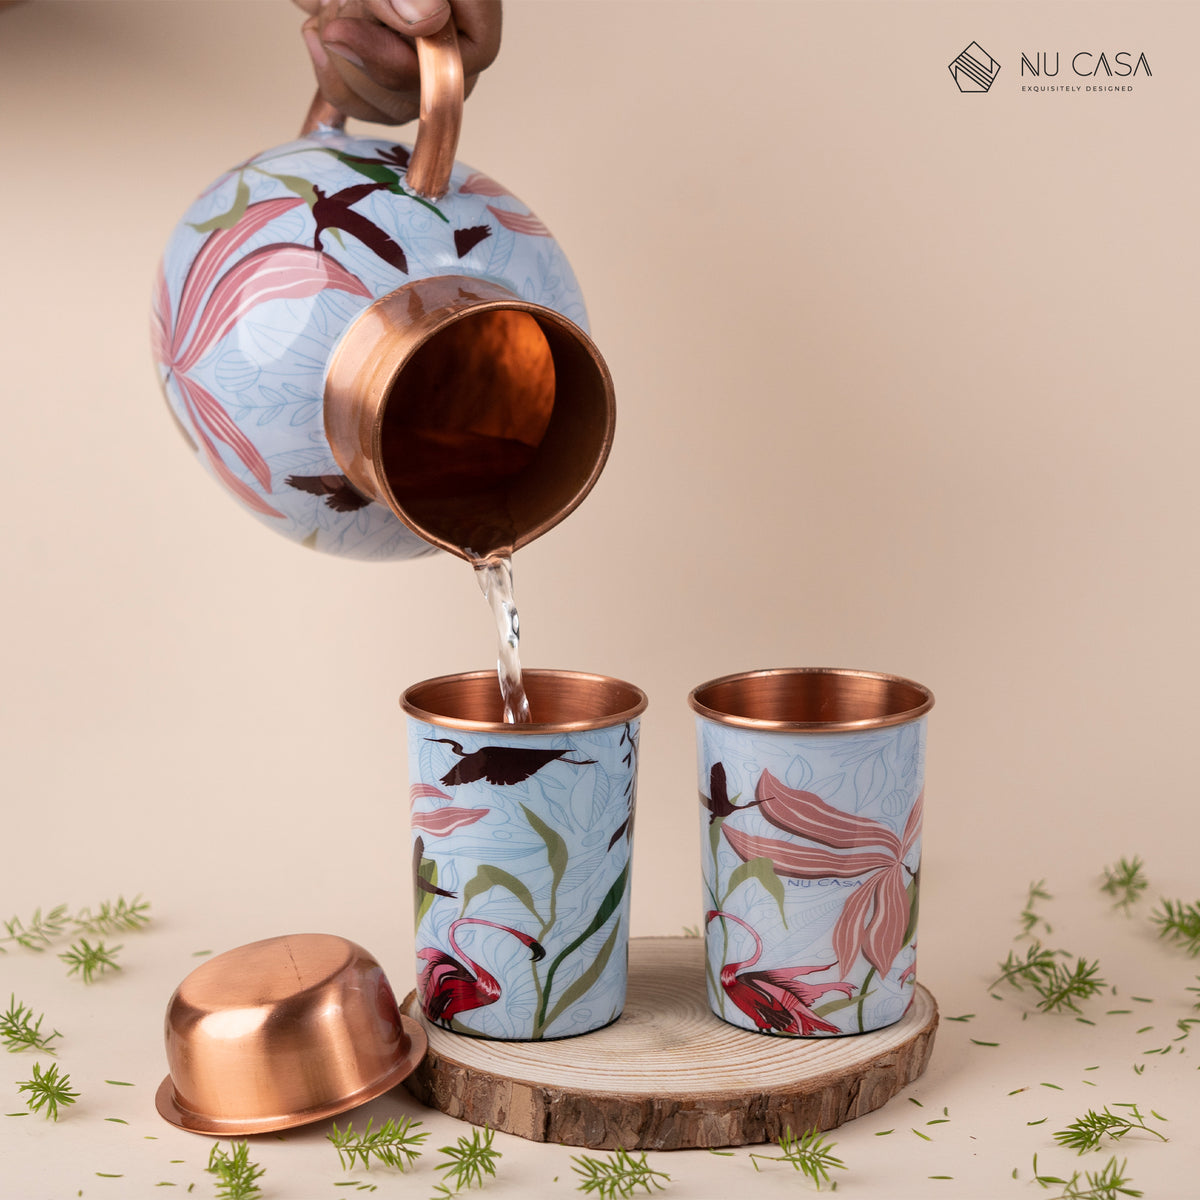 Buy premium quality copper jug तांबे के बर्तन कॉपर पानी पीने का फायदा